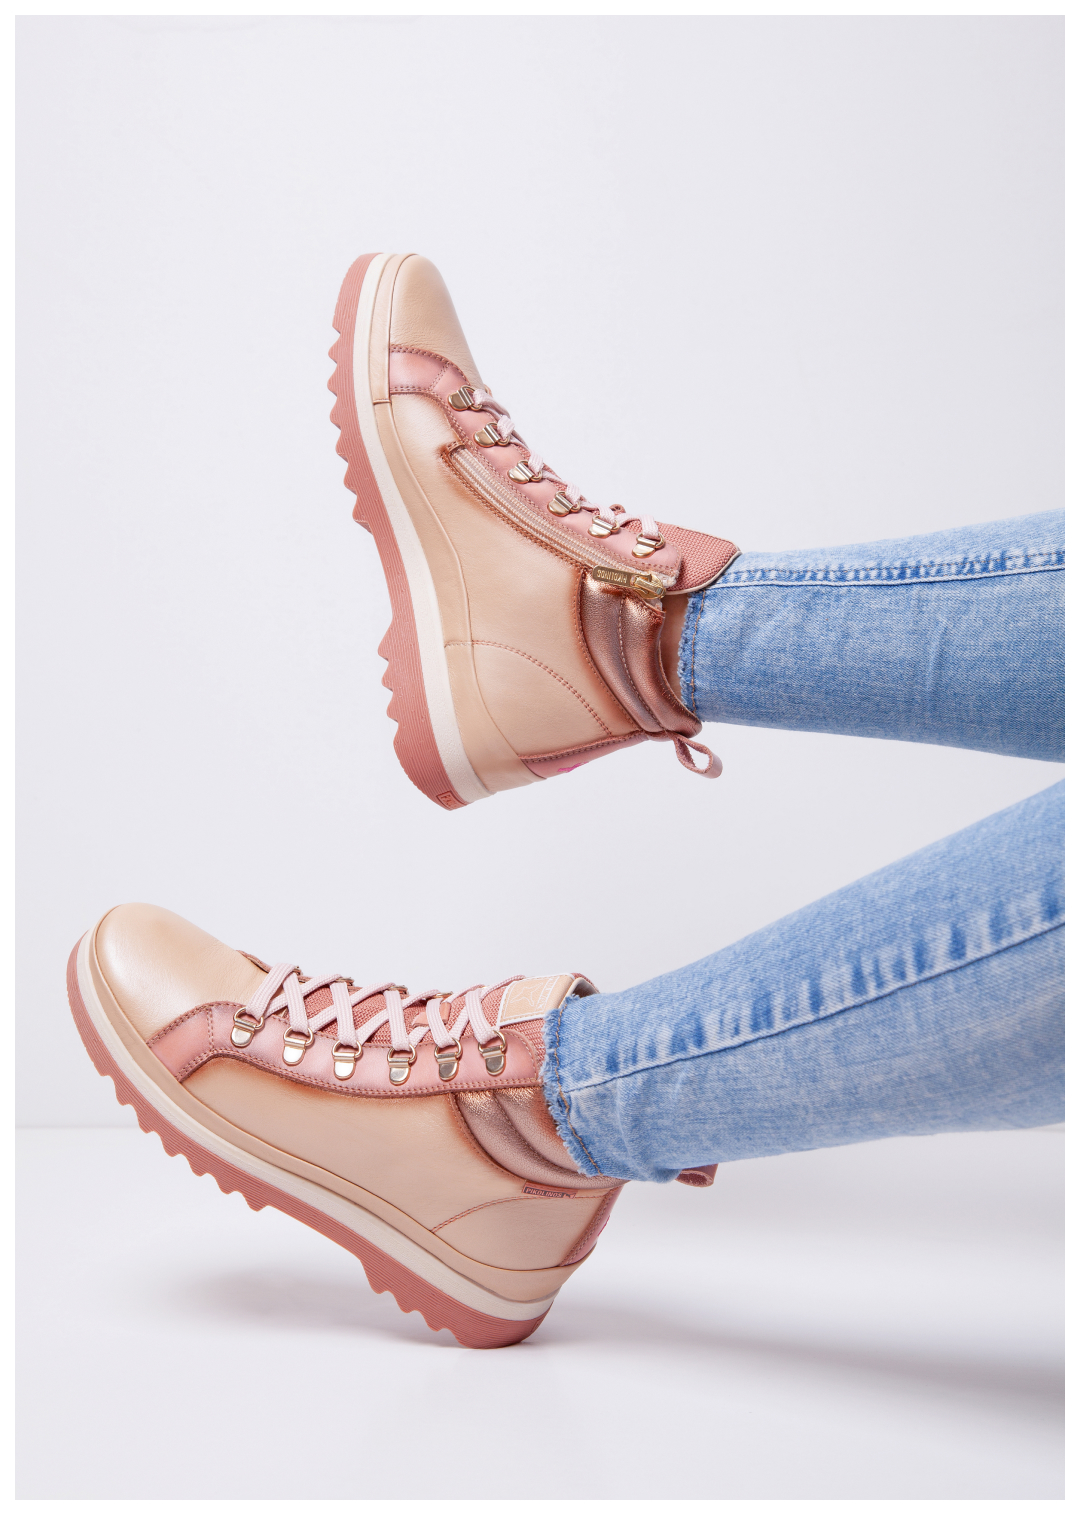 Fotografía de unas piernas de mujer con el botín Vigo rosa